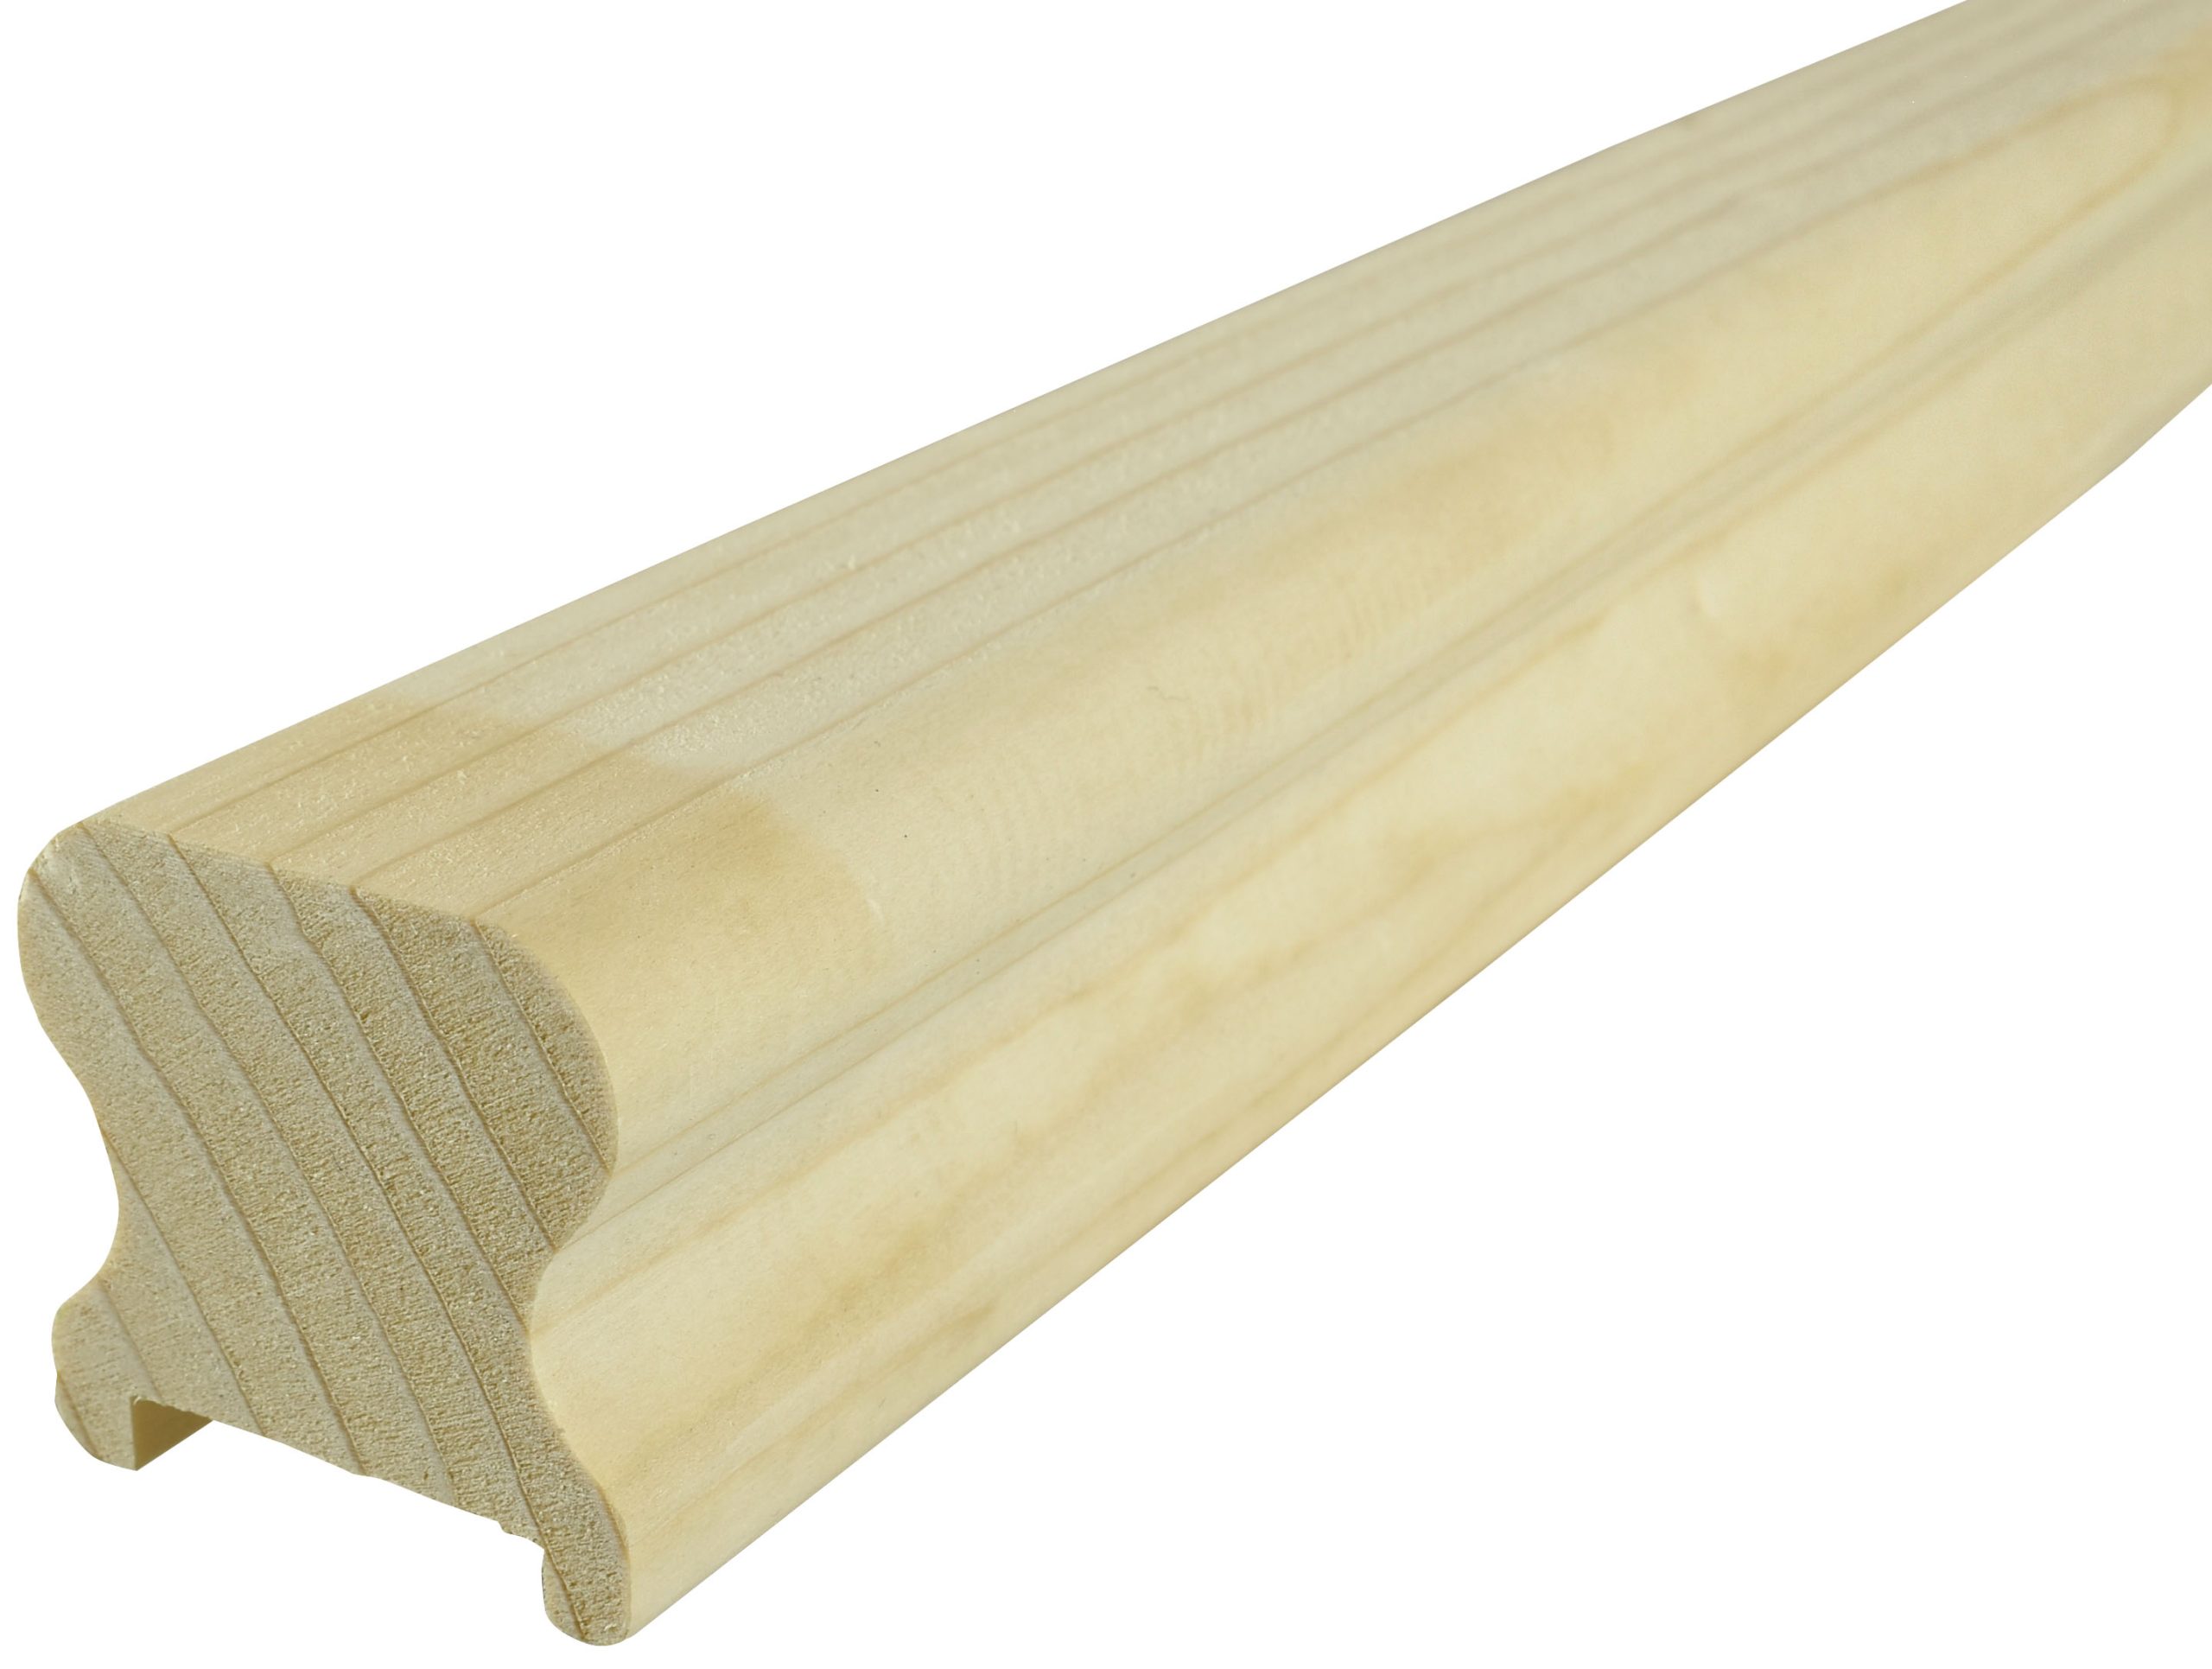 Dřevěné madlo na zábradlí 45x45x2500 - smrk MS4545